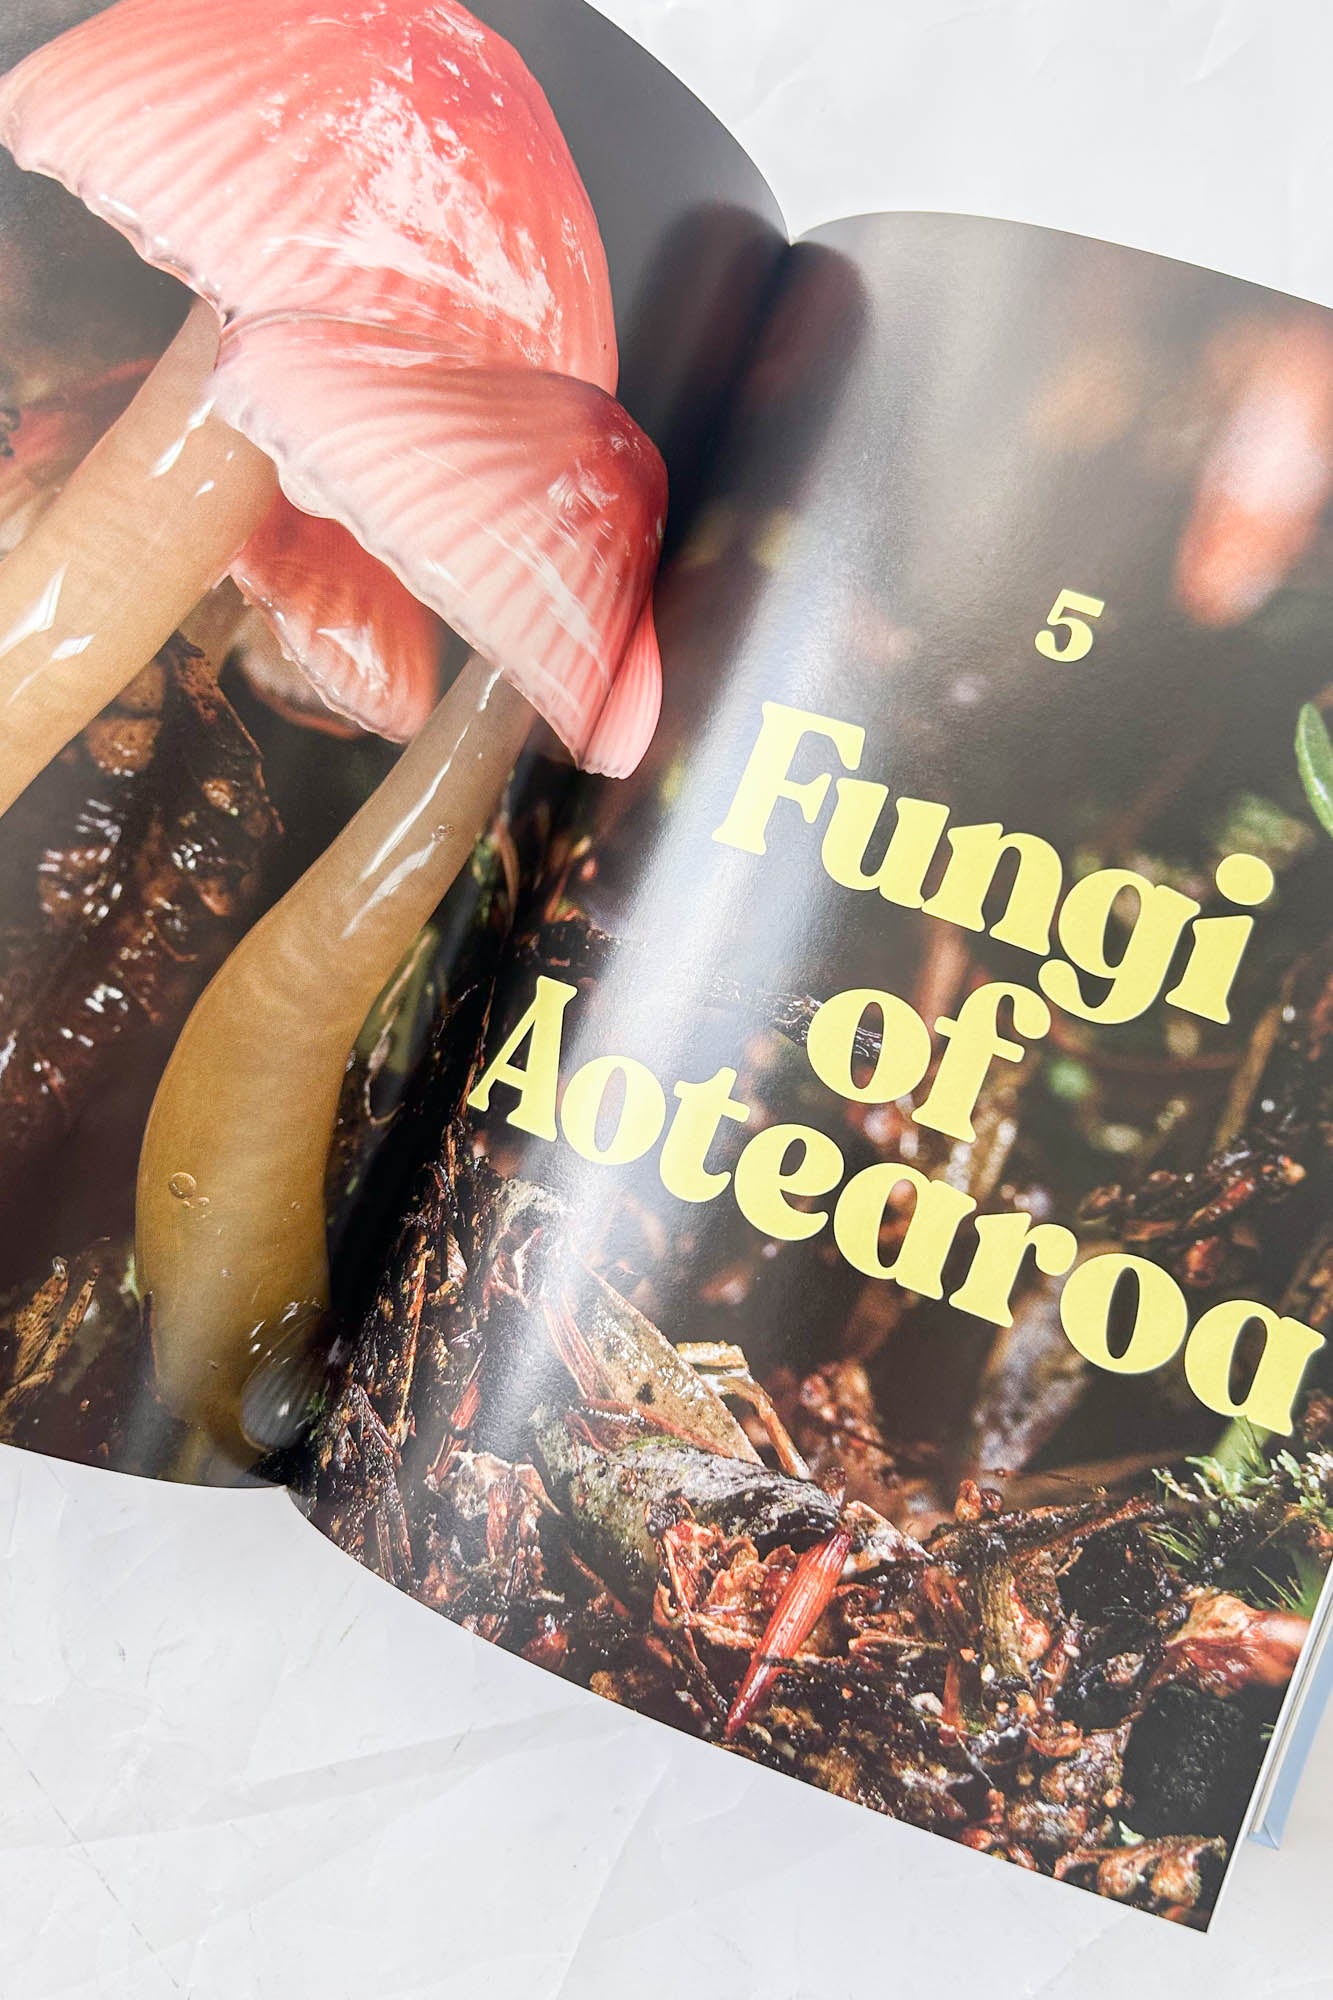 Fungi of Aotearoa